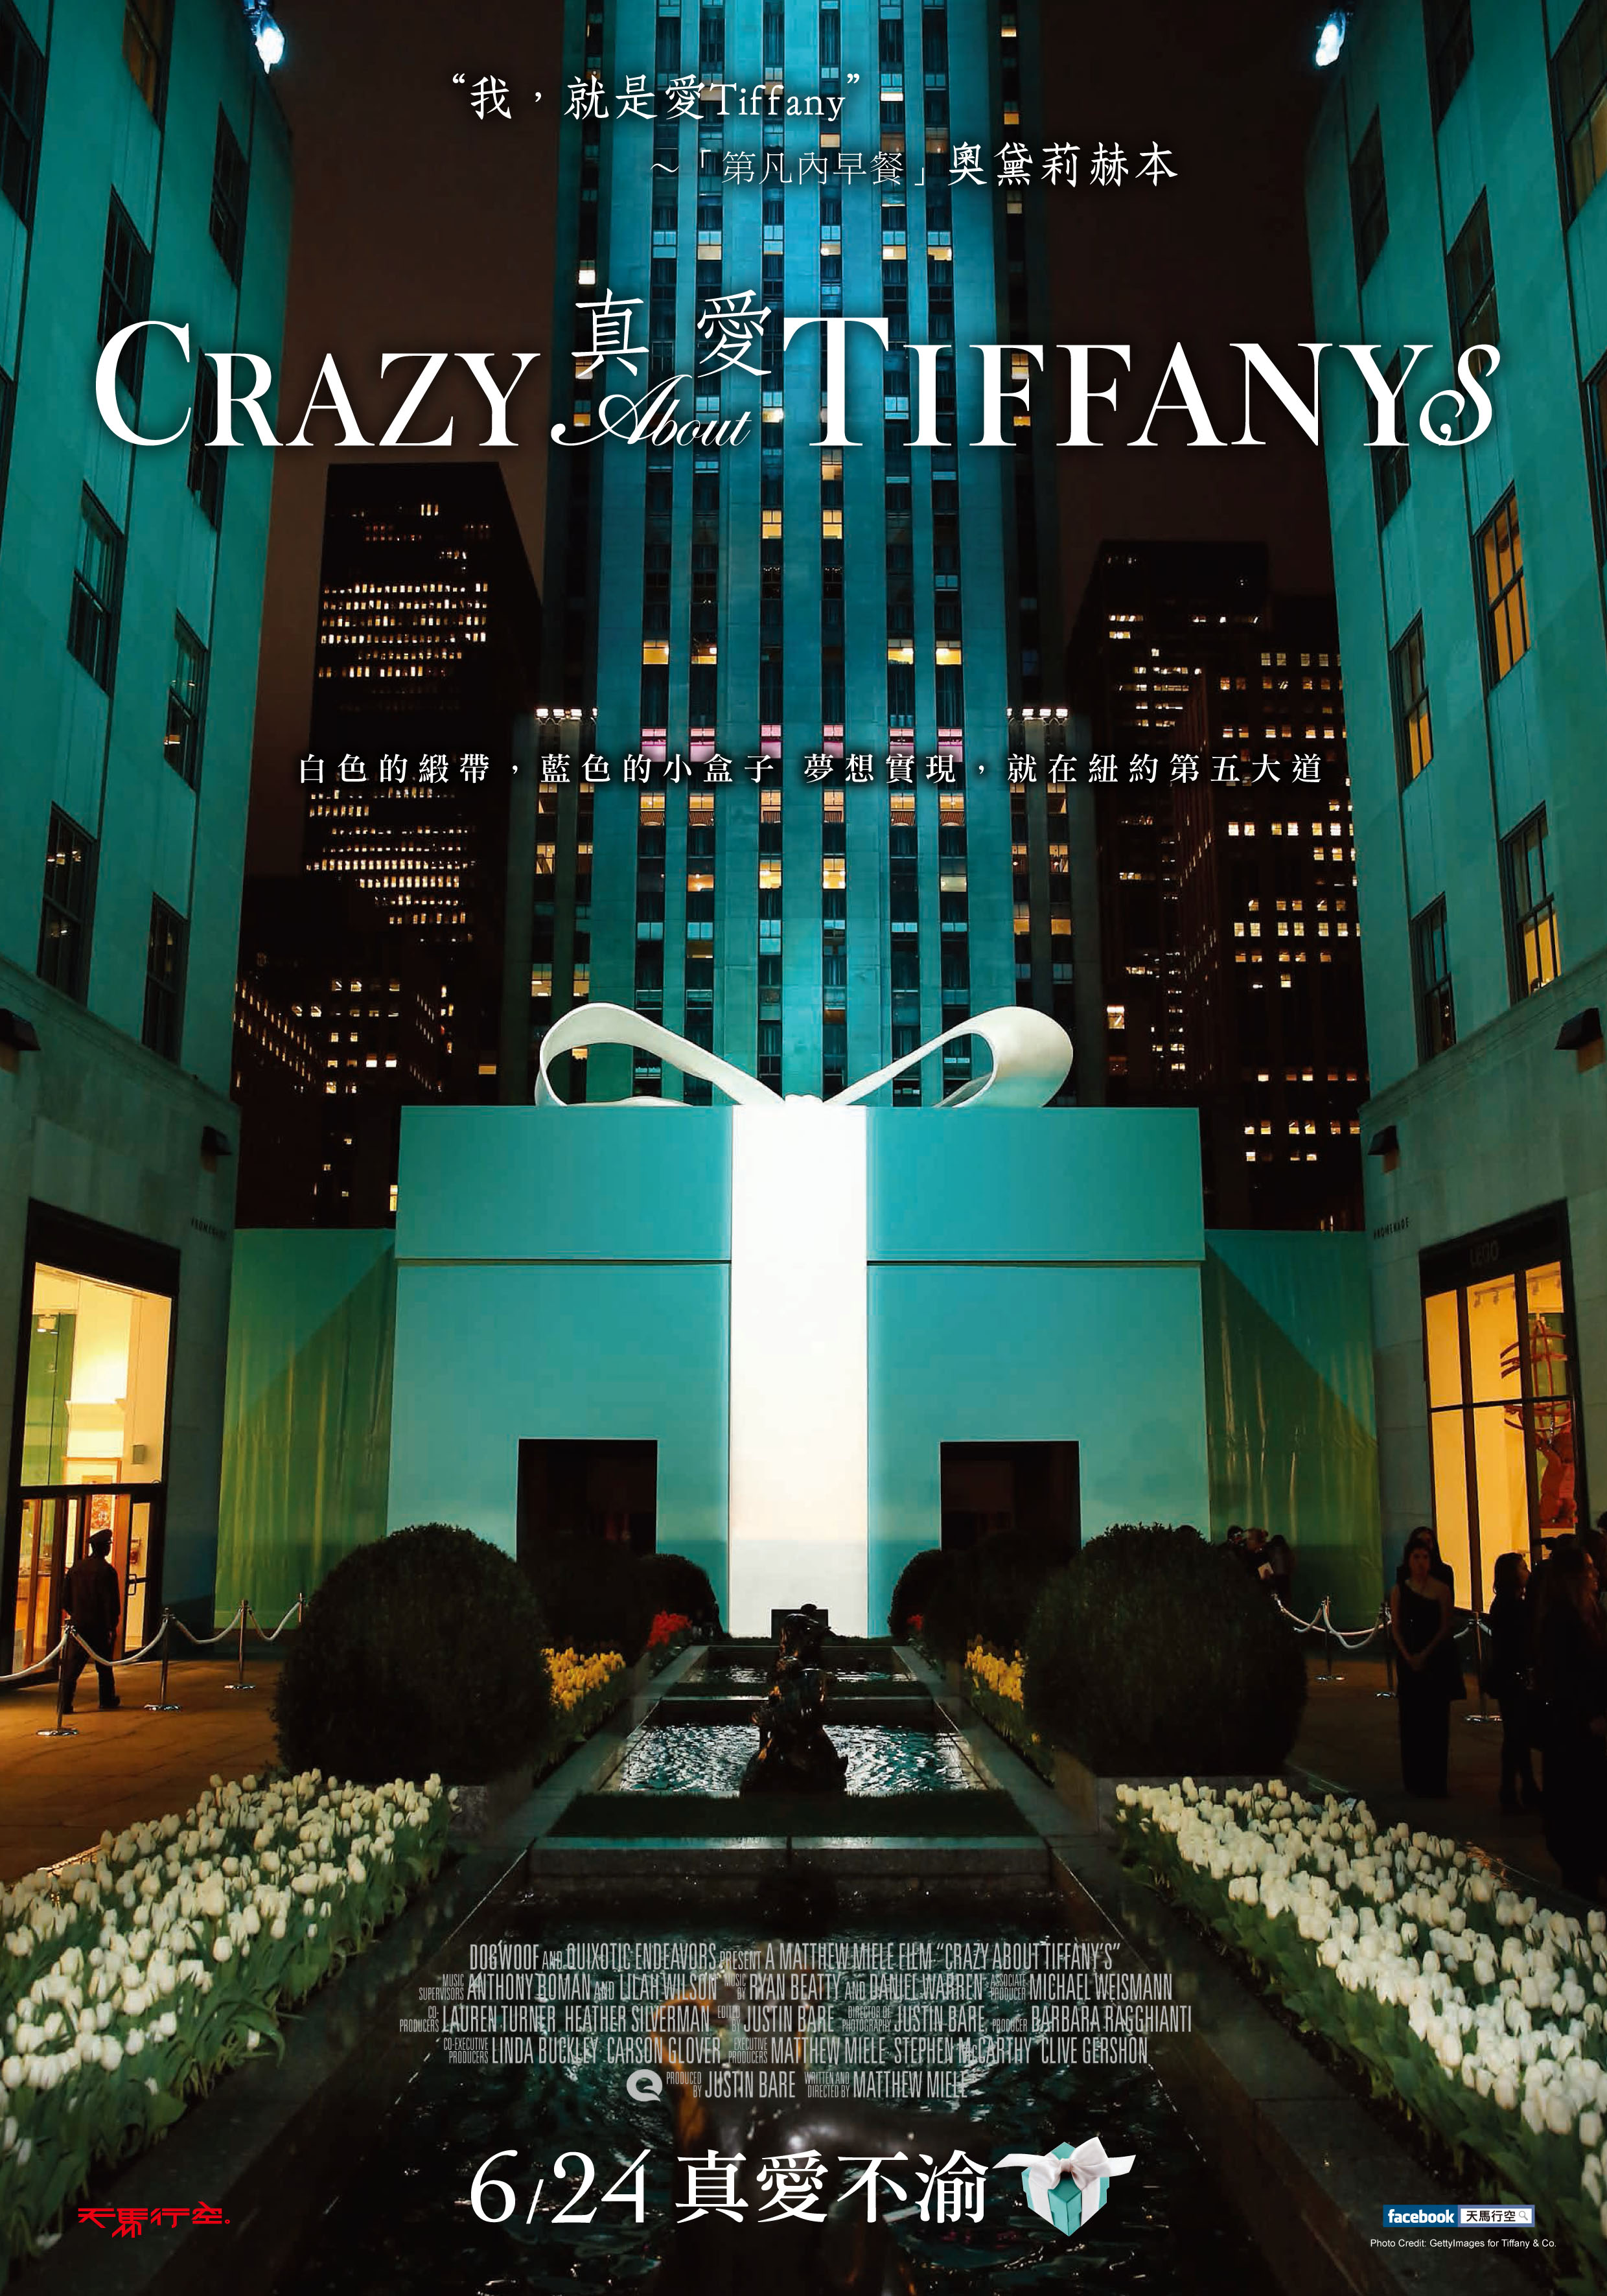 奧黛麗赫本也瘋狂著迷的浪漫時刻_時尚紀錄片《真愛Tiffany》揭開藍色盒子裡的動人傳奇_(1).jpg